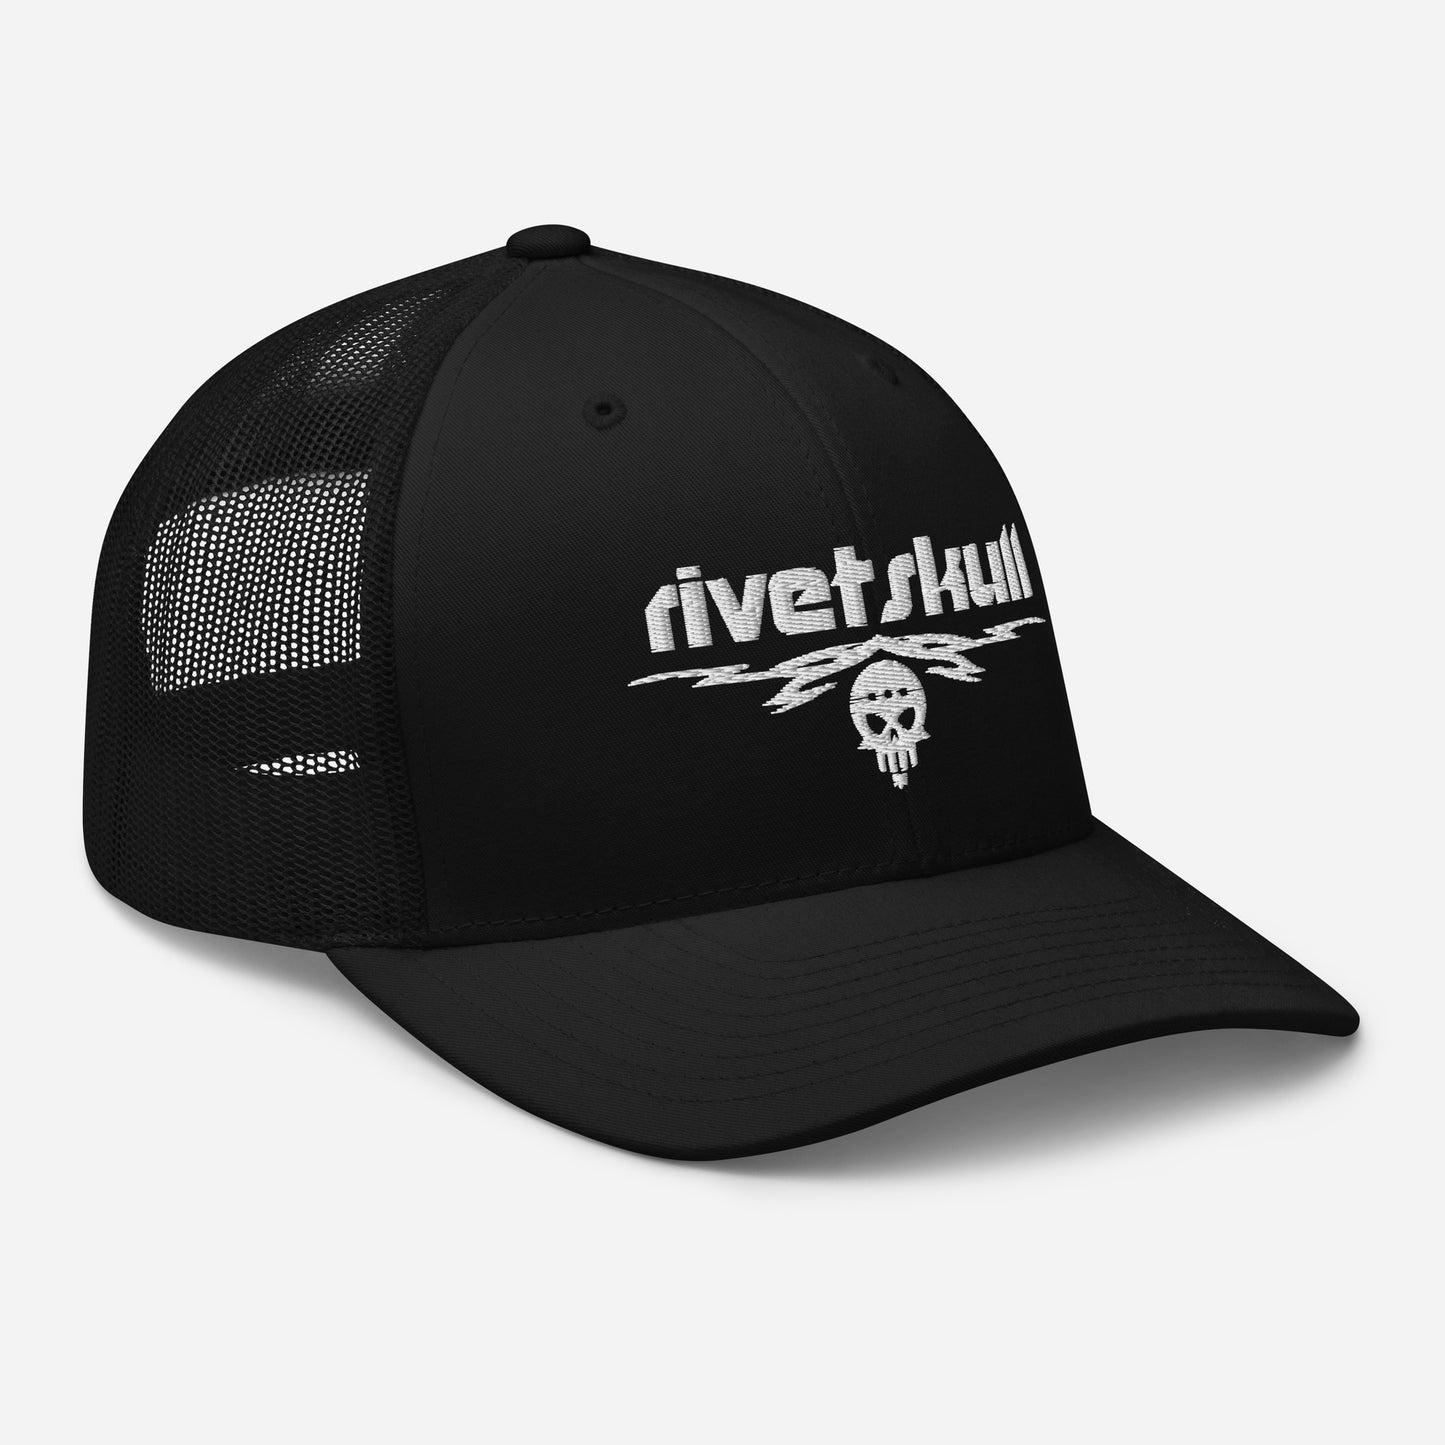 RivetSkull Trucker Cap